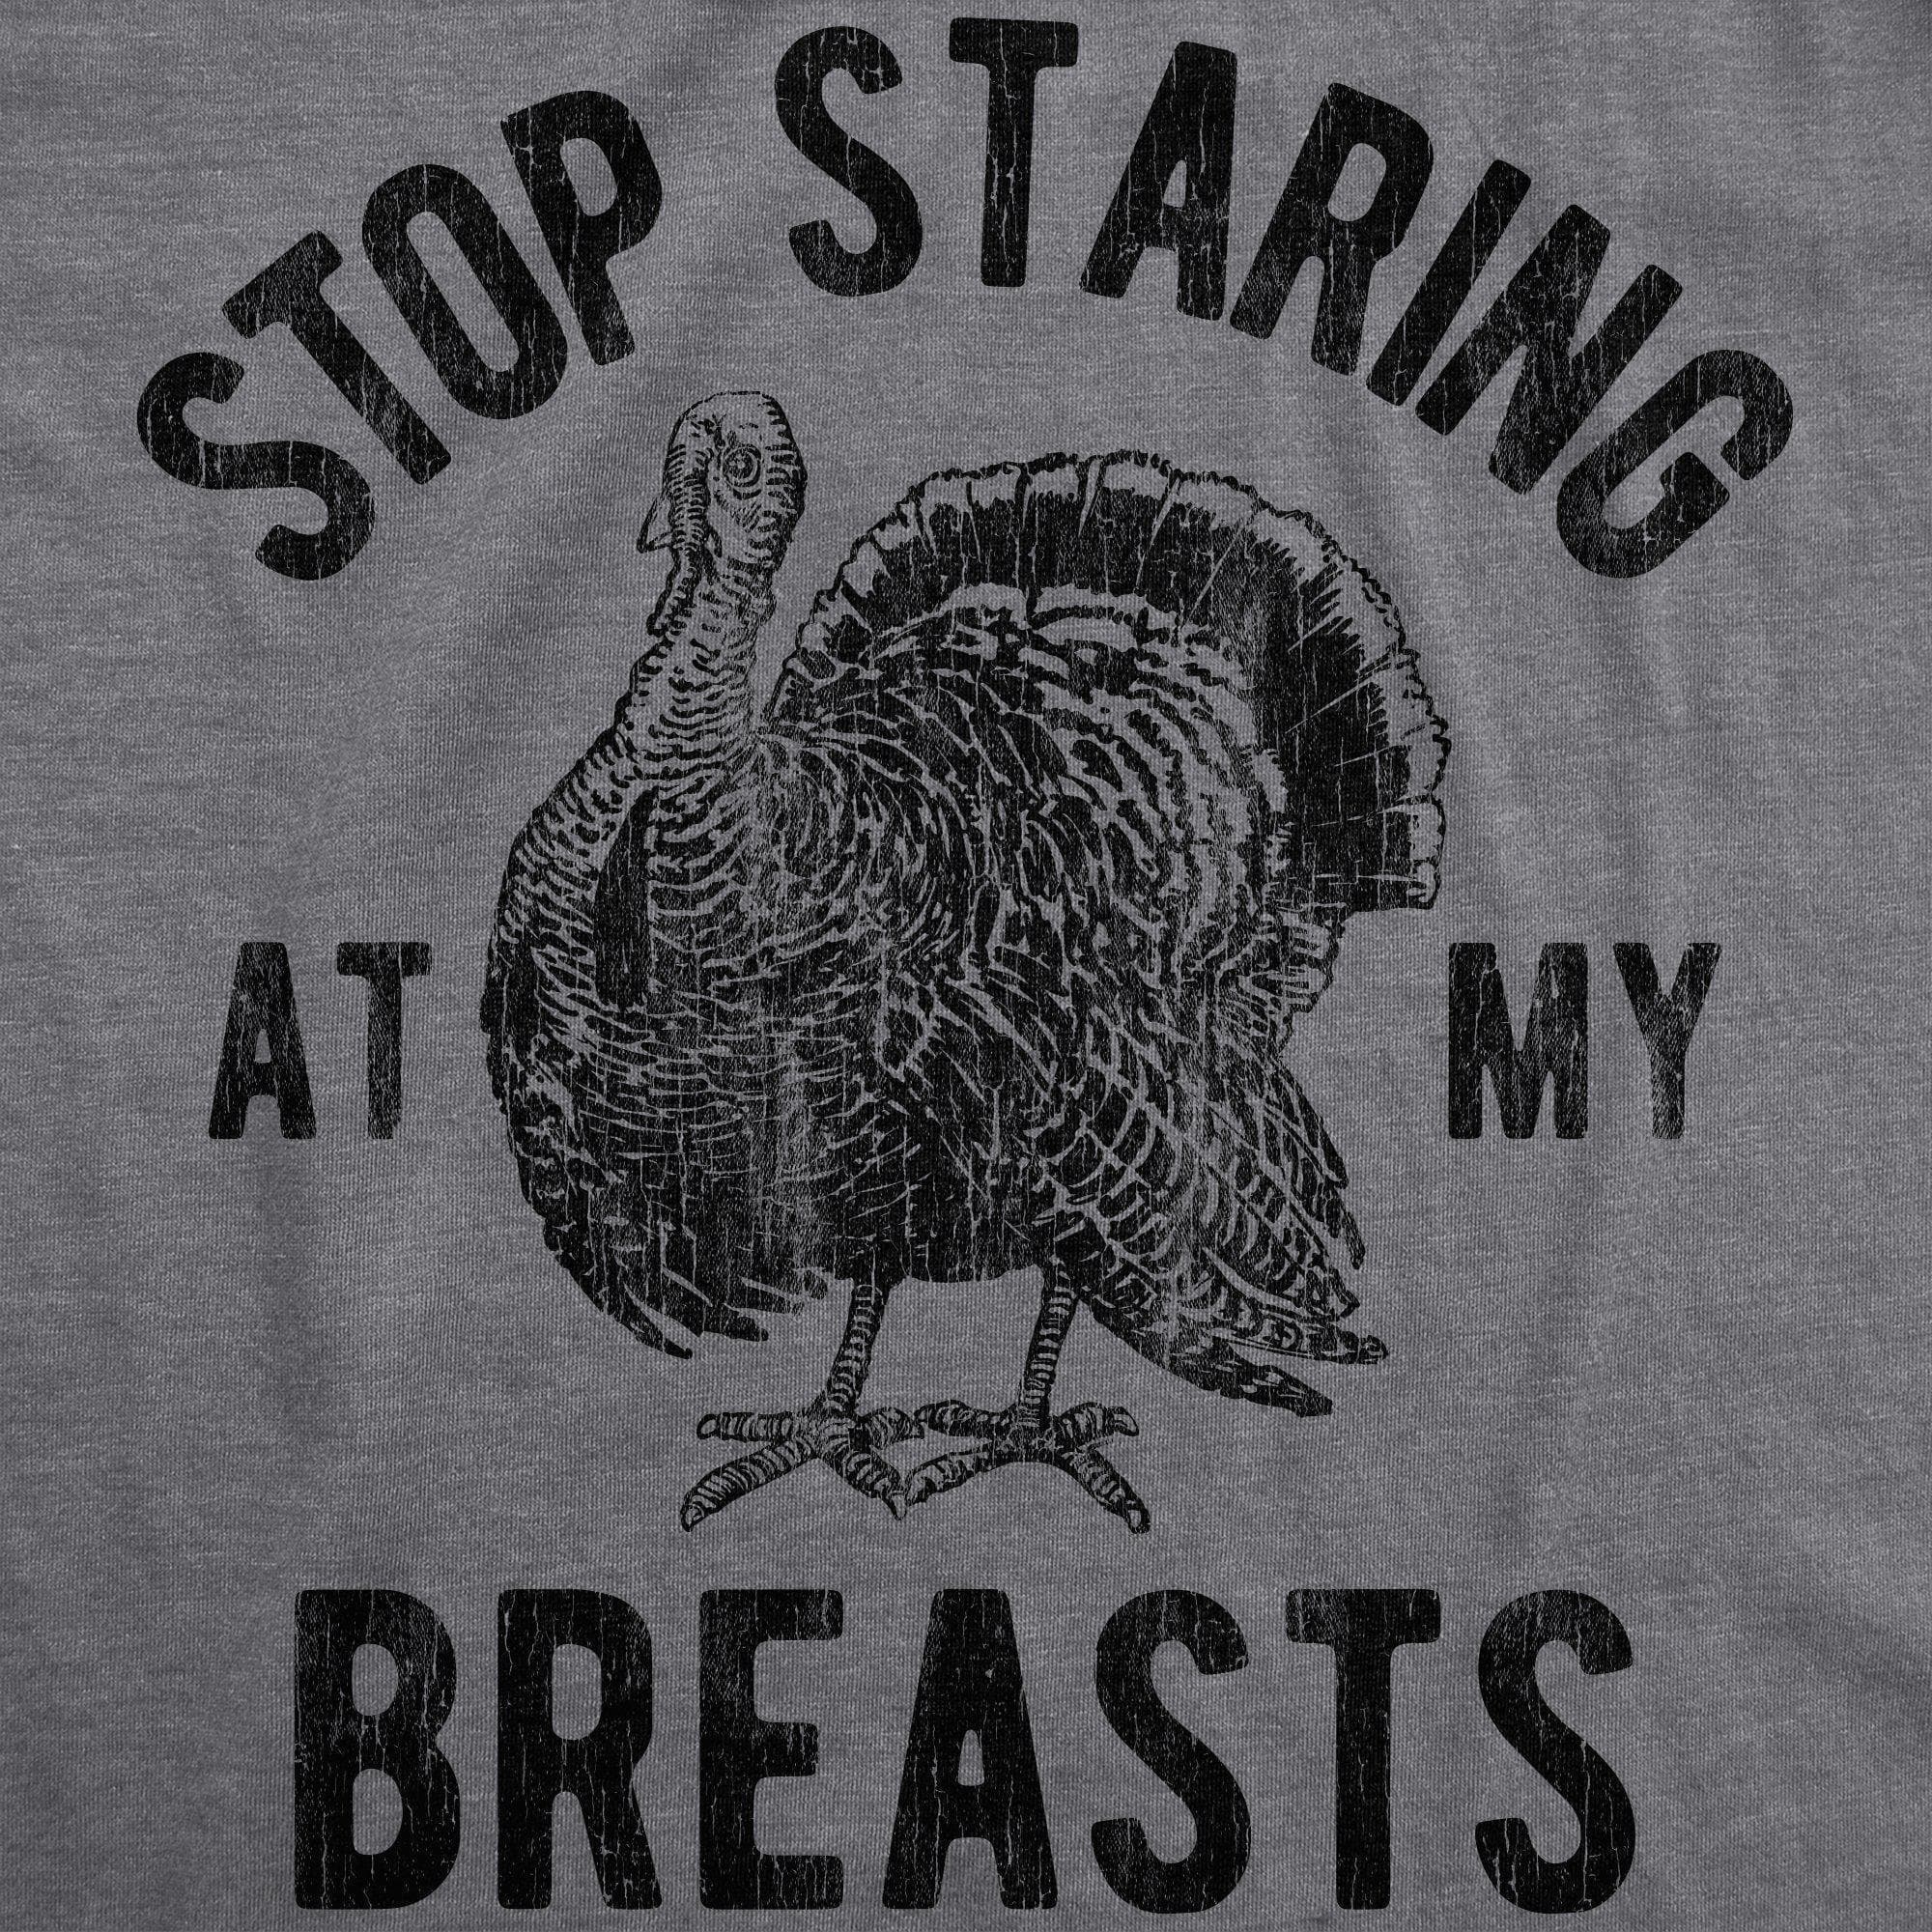 Stop Staring At My Breasts Men's Tshirt - Crazy Dog T-Shirts